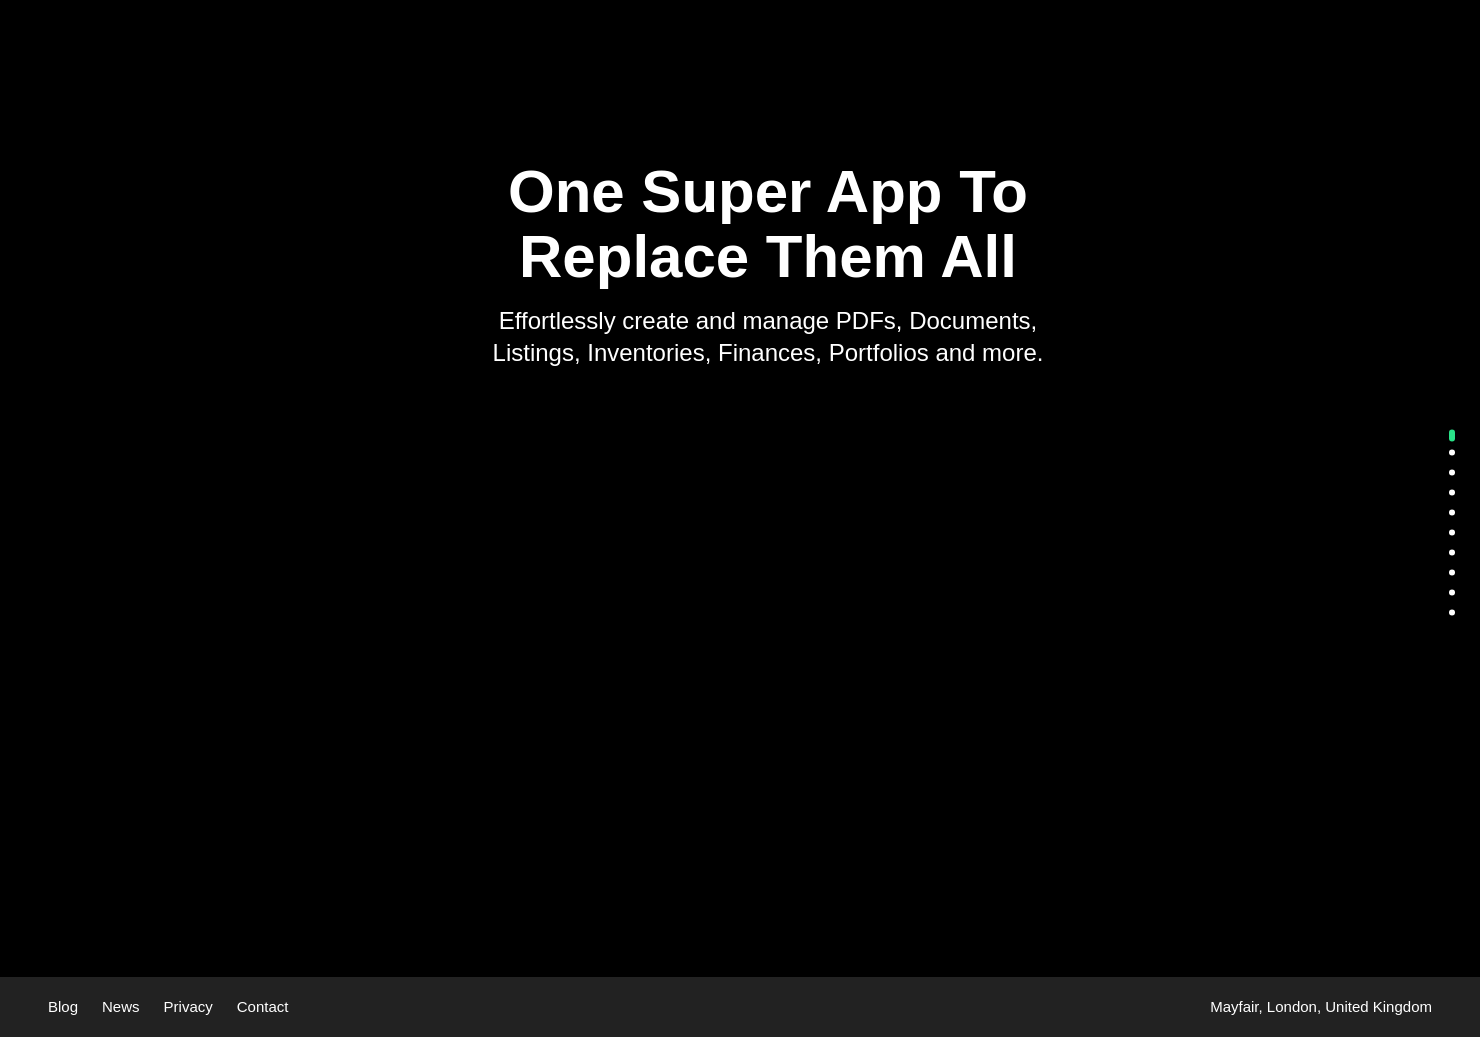 startuptile PropertyCard-Property Super App